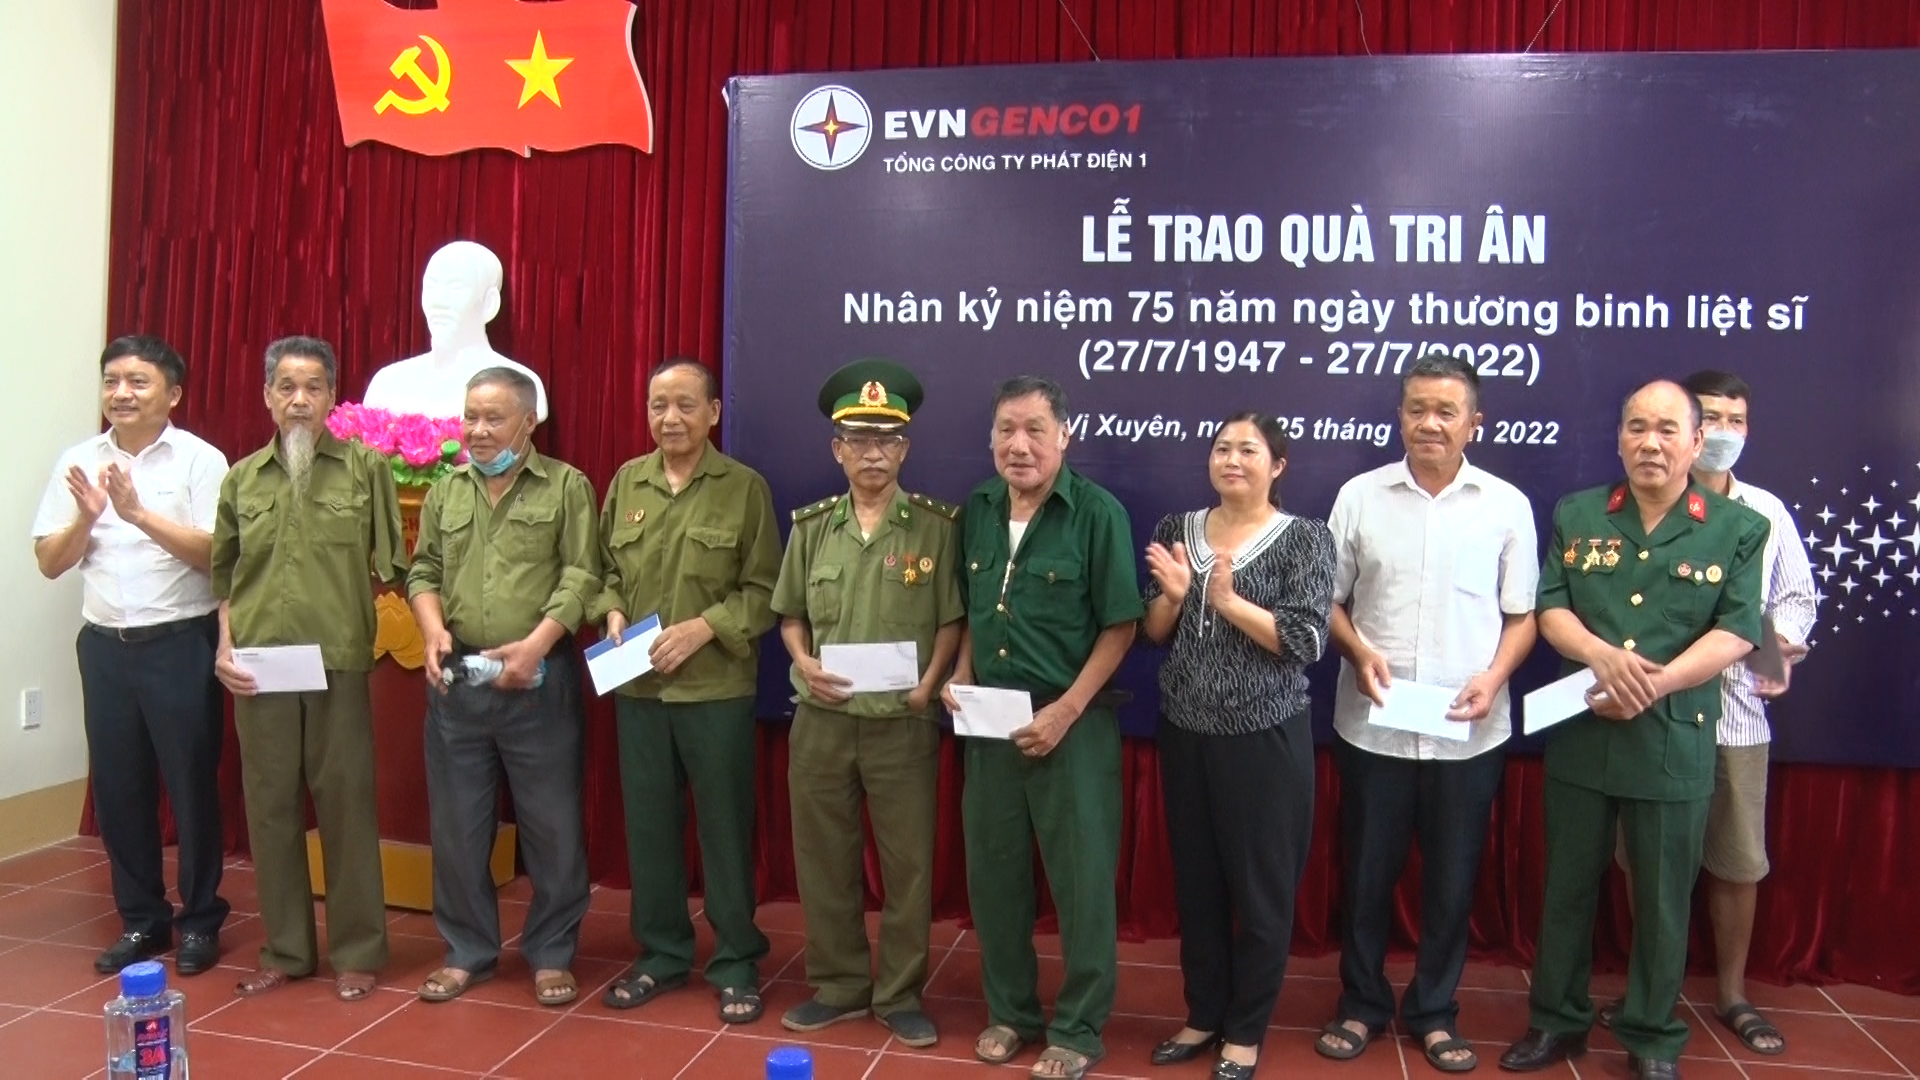 Tổng Công ty phát điện 1 tặng quà tri ân tại huyện Vị Xuyên